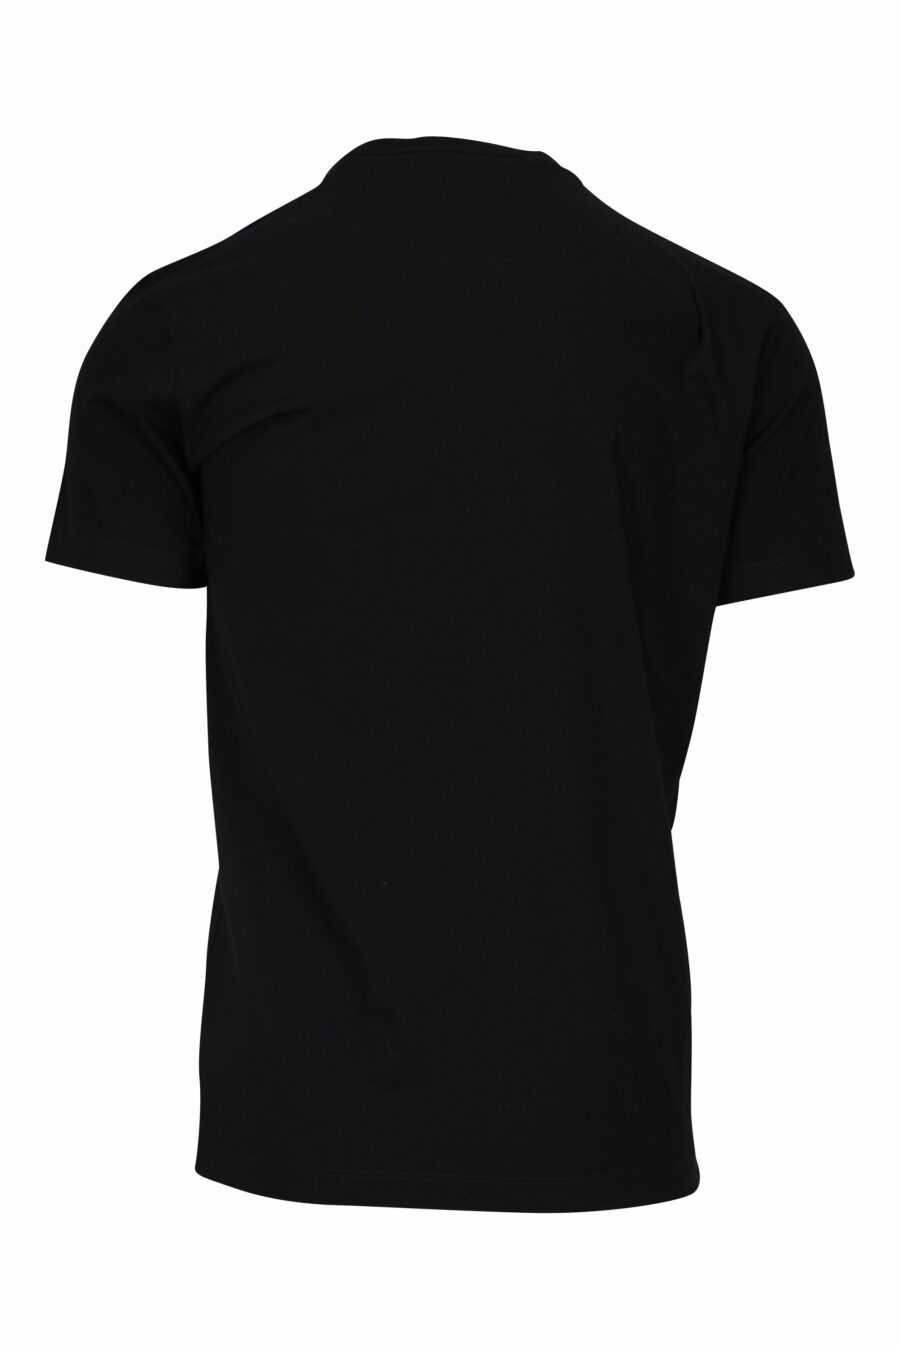 T-shirt preta com maxilogo "sitckers" - 8054148086725 1